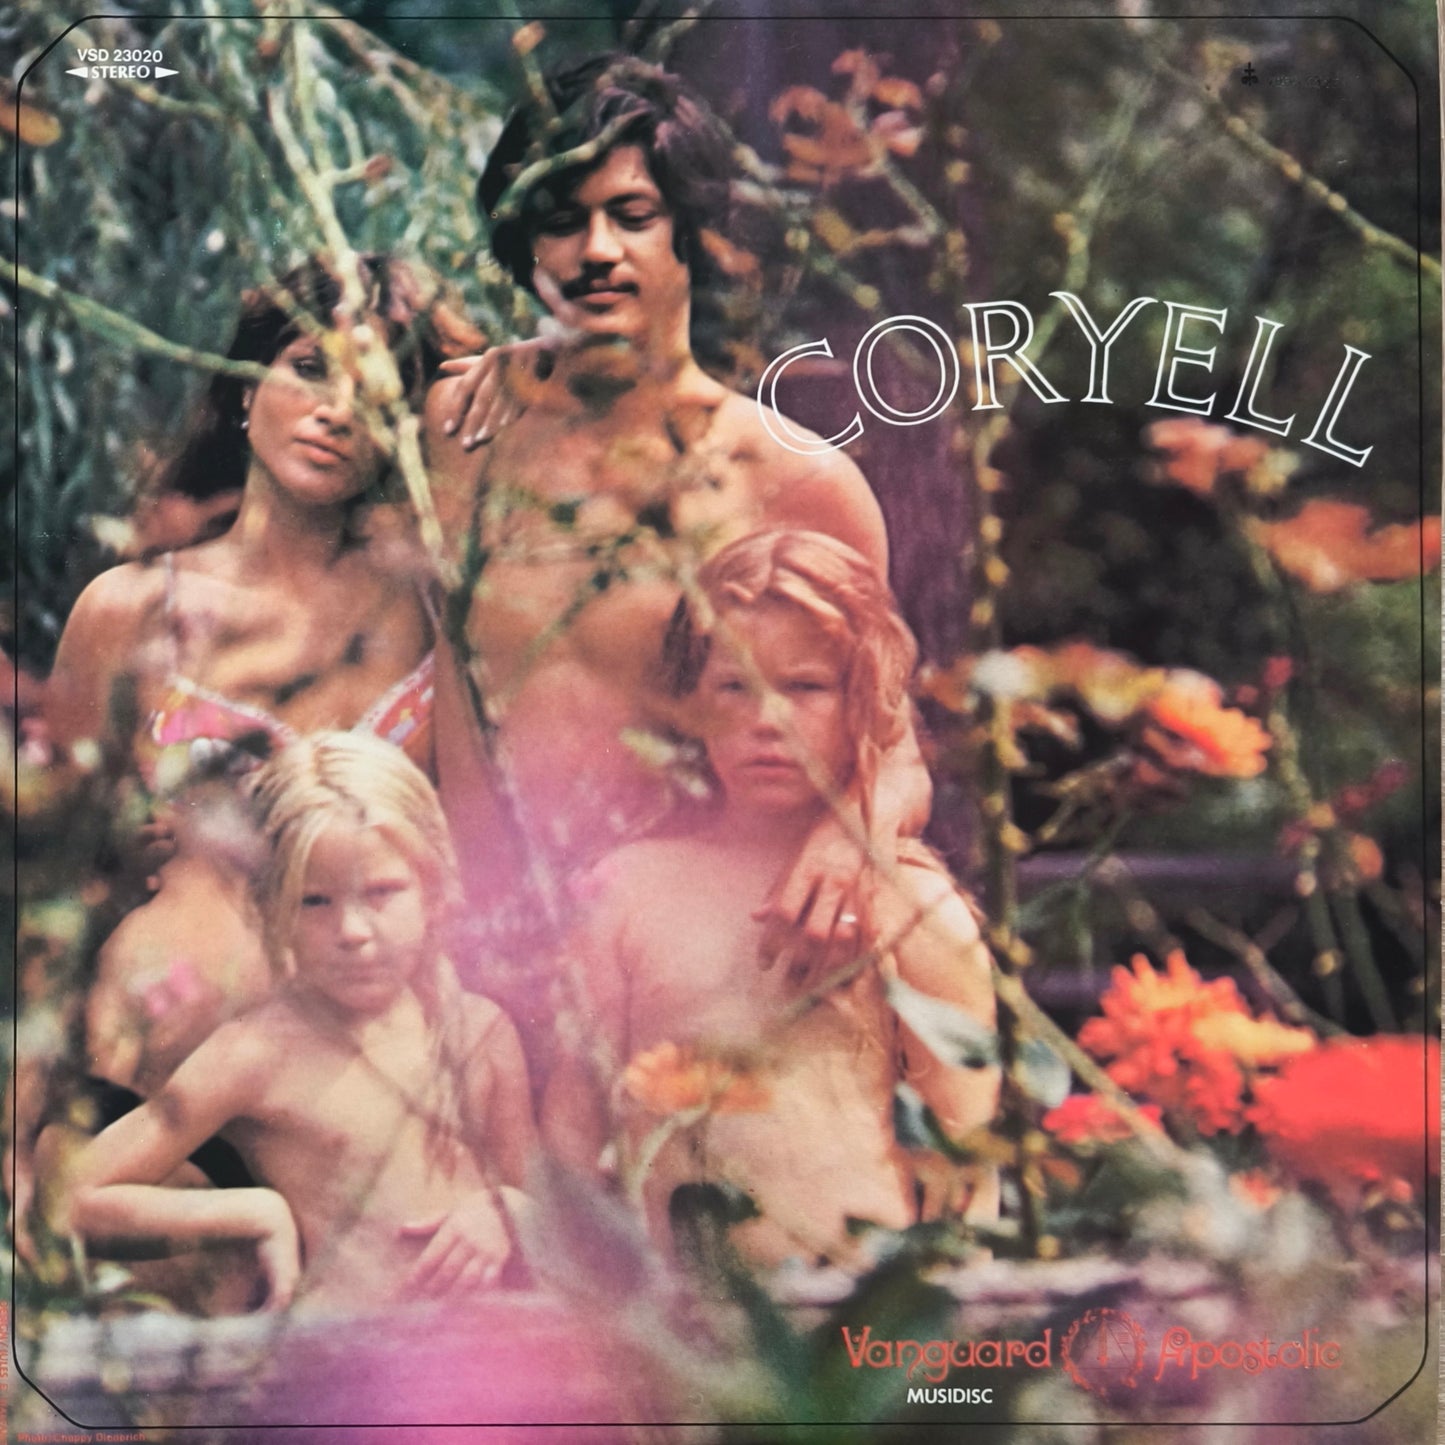 LARRY COYELL - Coryell